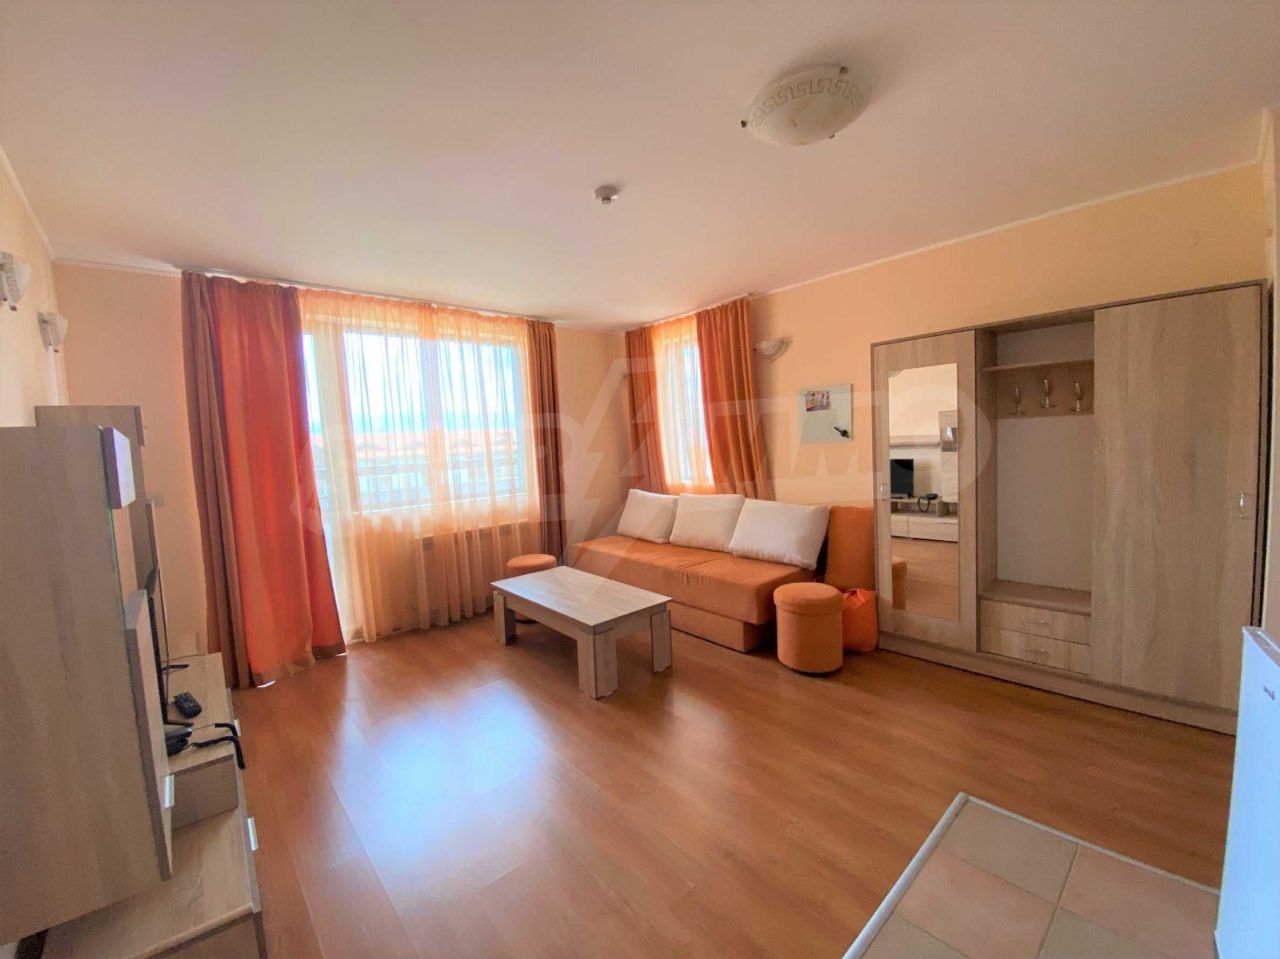 Apartment in Bansko, Bulgarien, 73.26 m2 - Foto 1